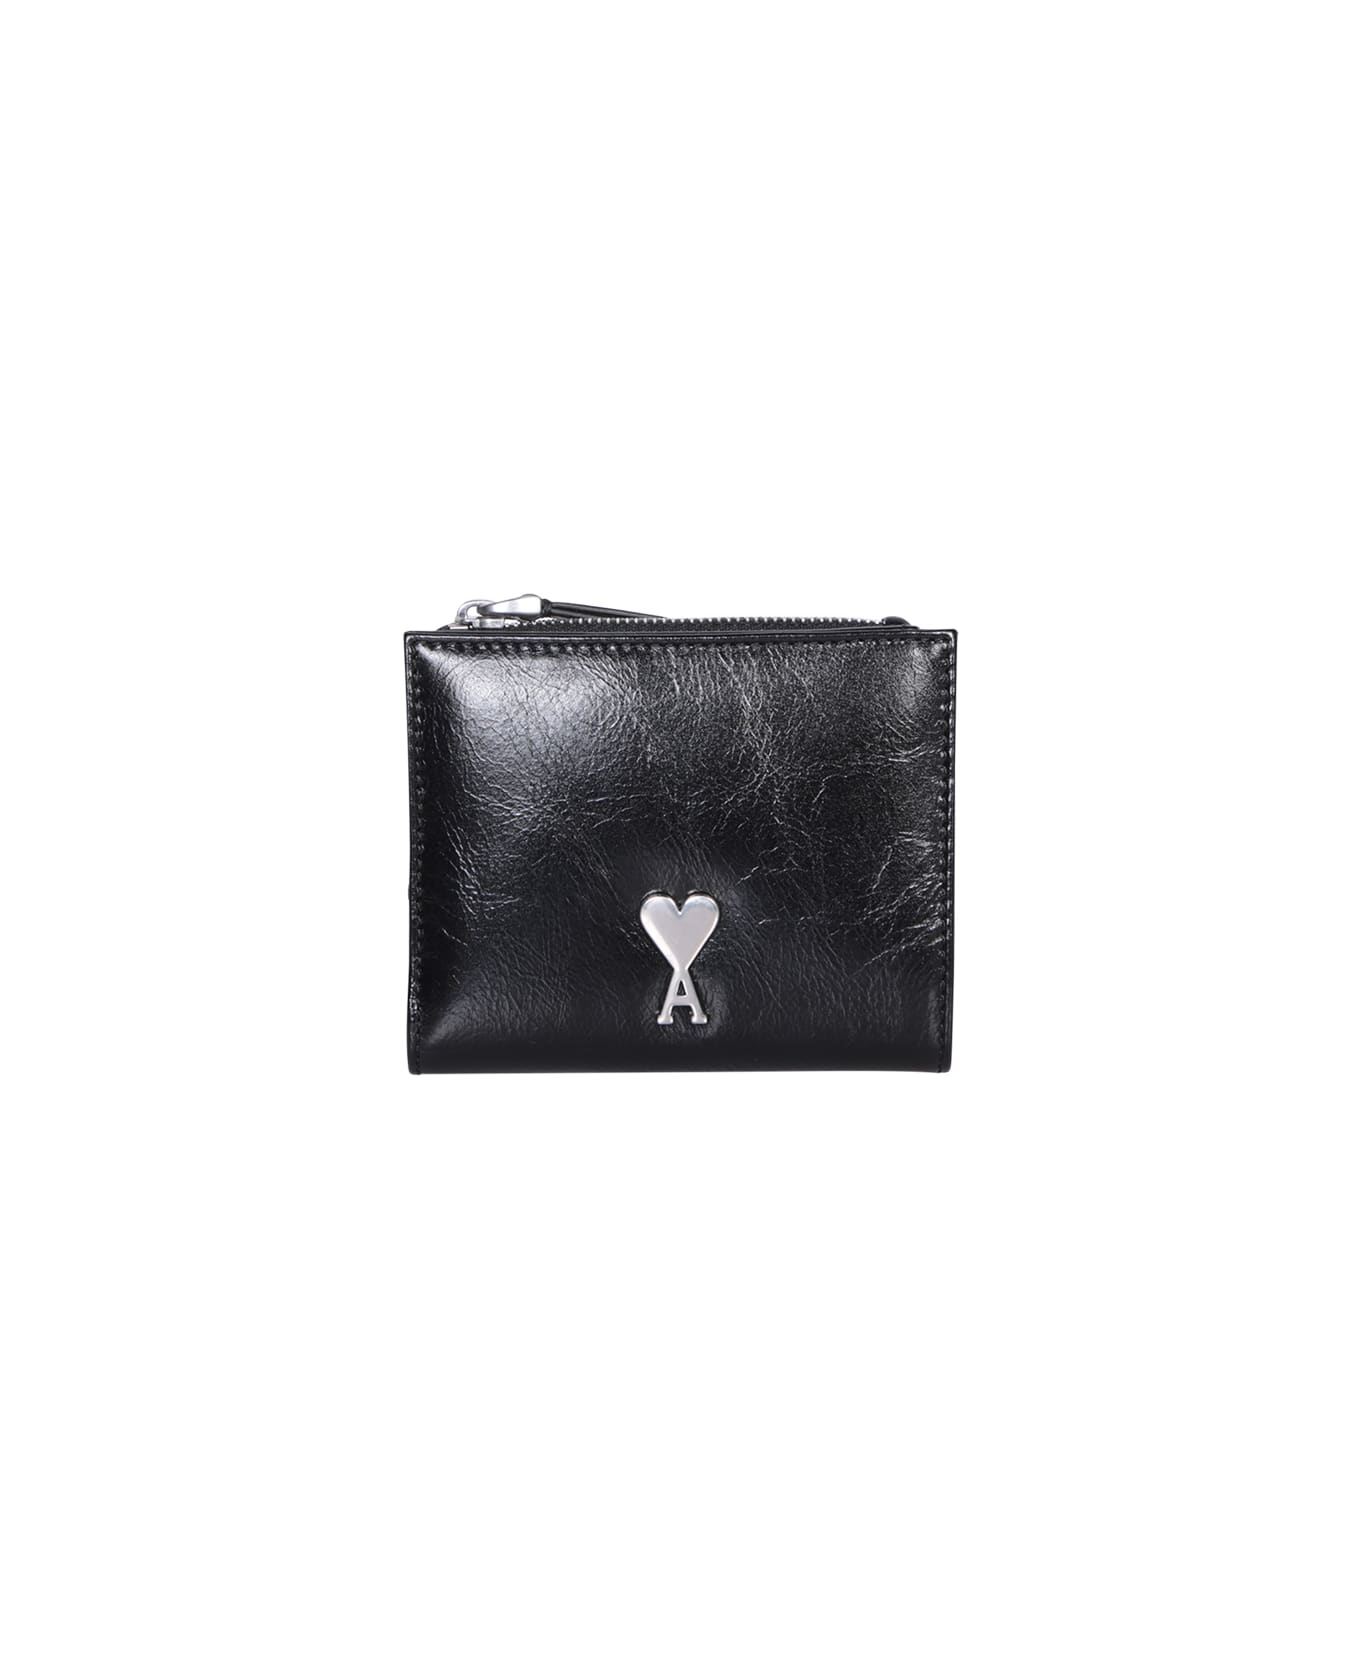 Ami Alexandre Mattiussi Ami Paris Voulez Black Leather Wallet - Black